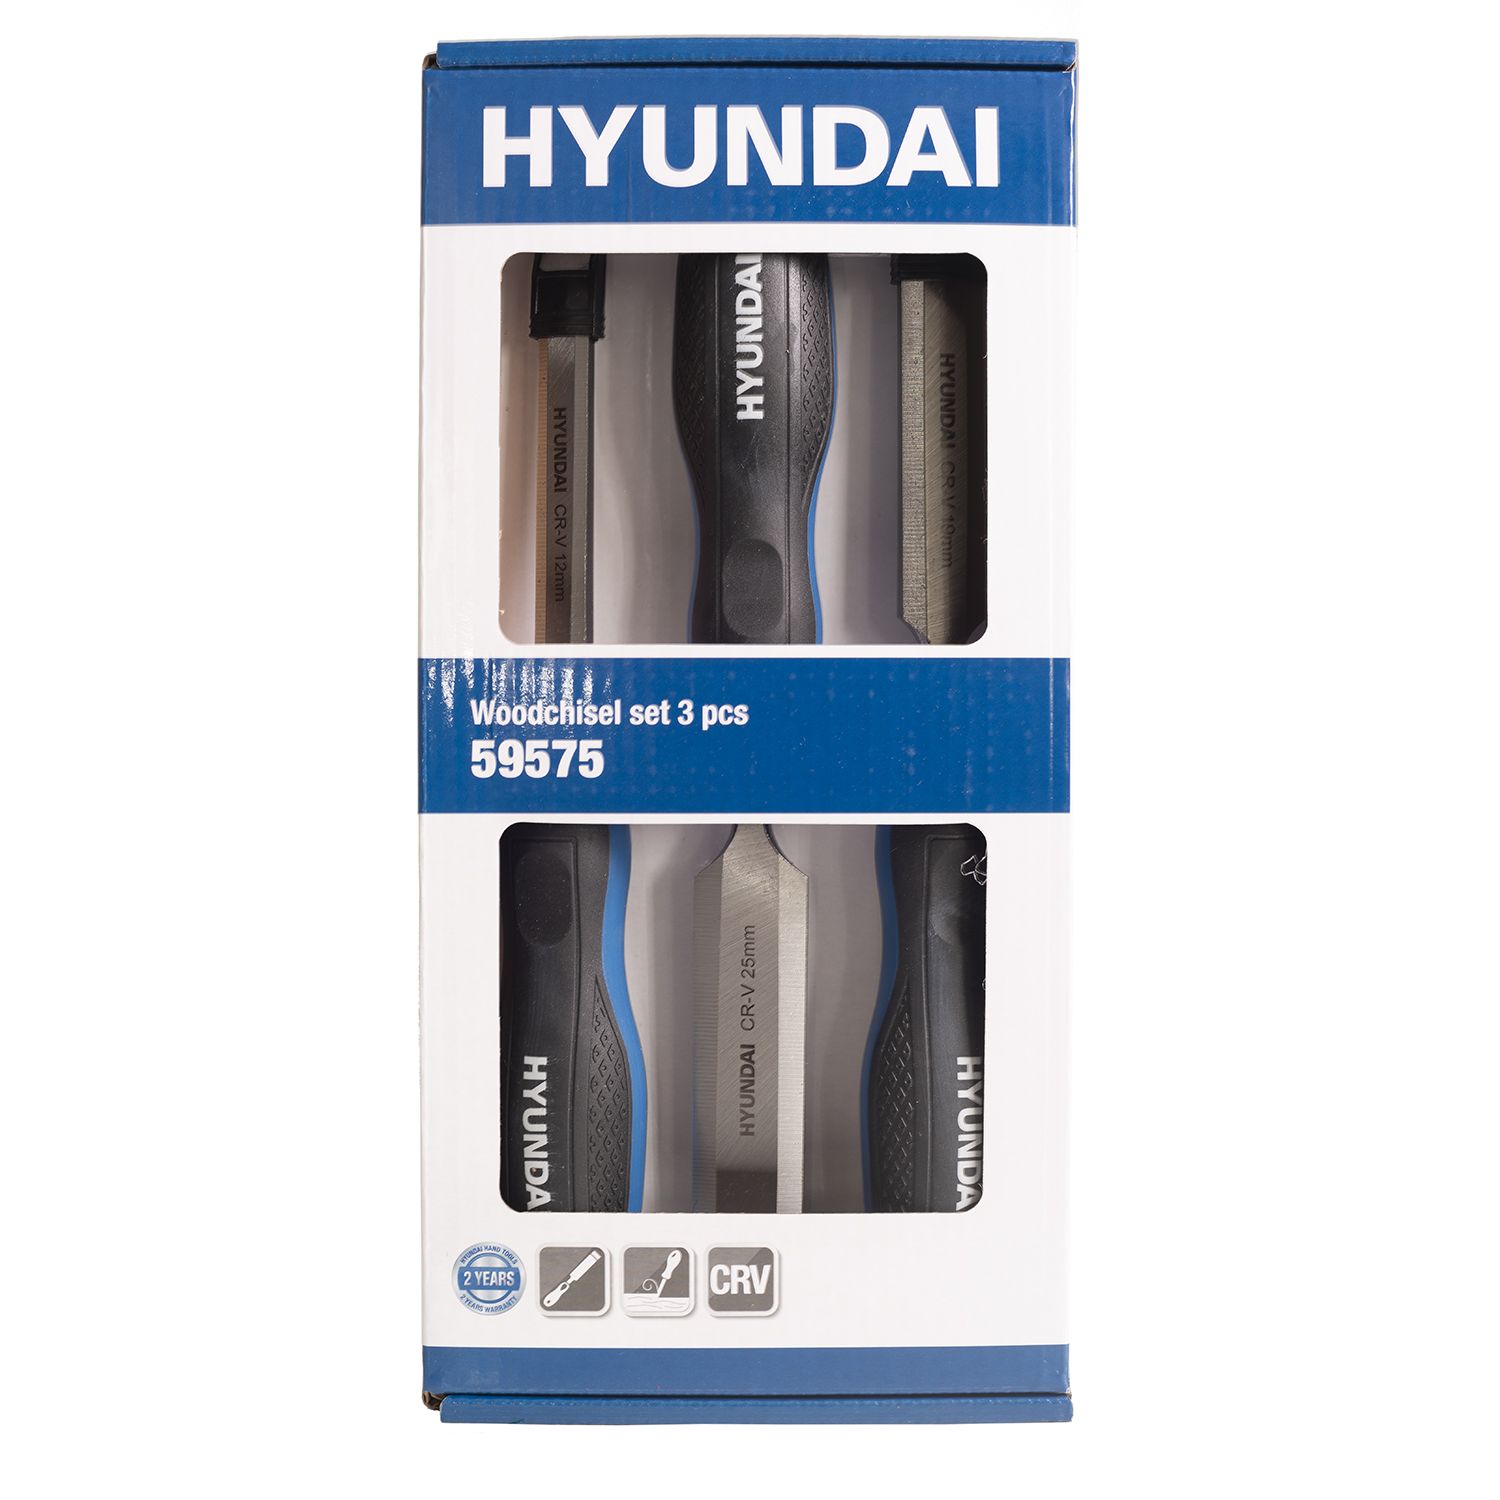 Hyundai houtbeitelset 12-19-25mm